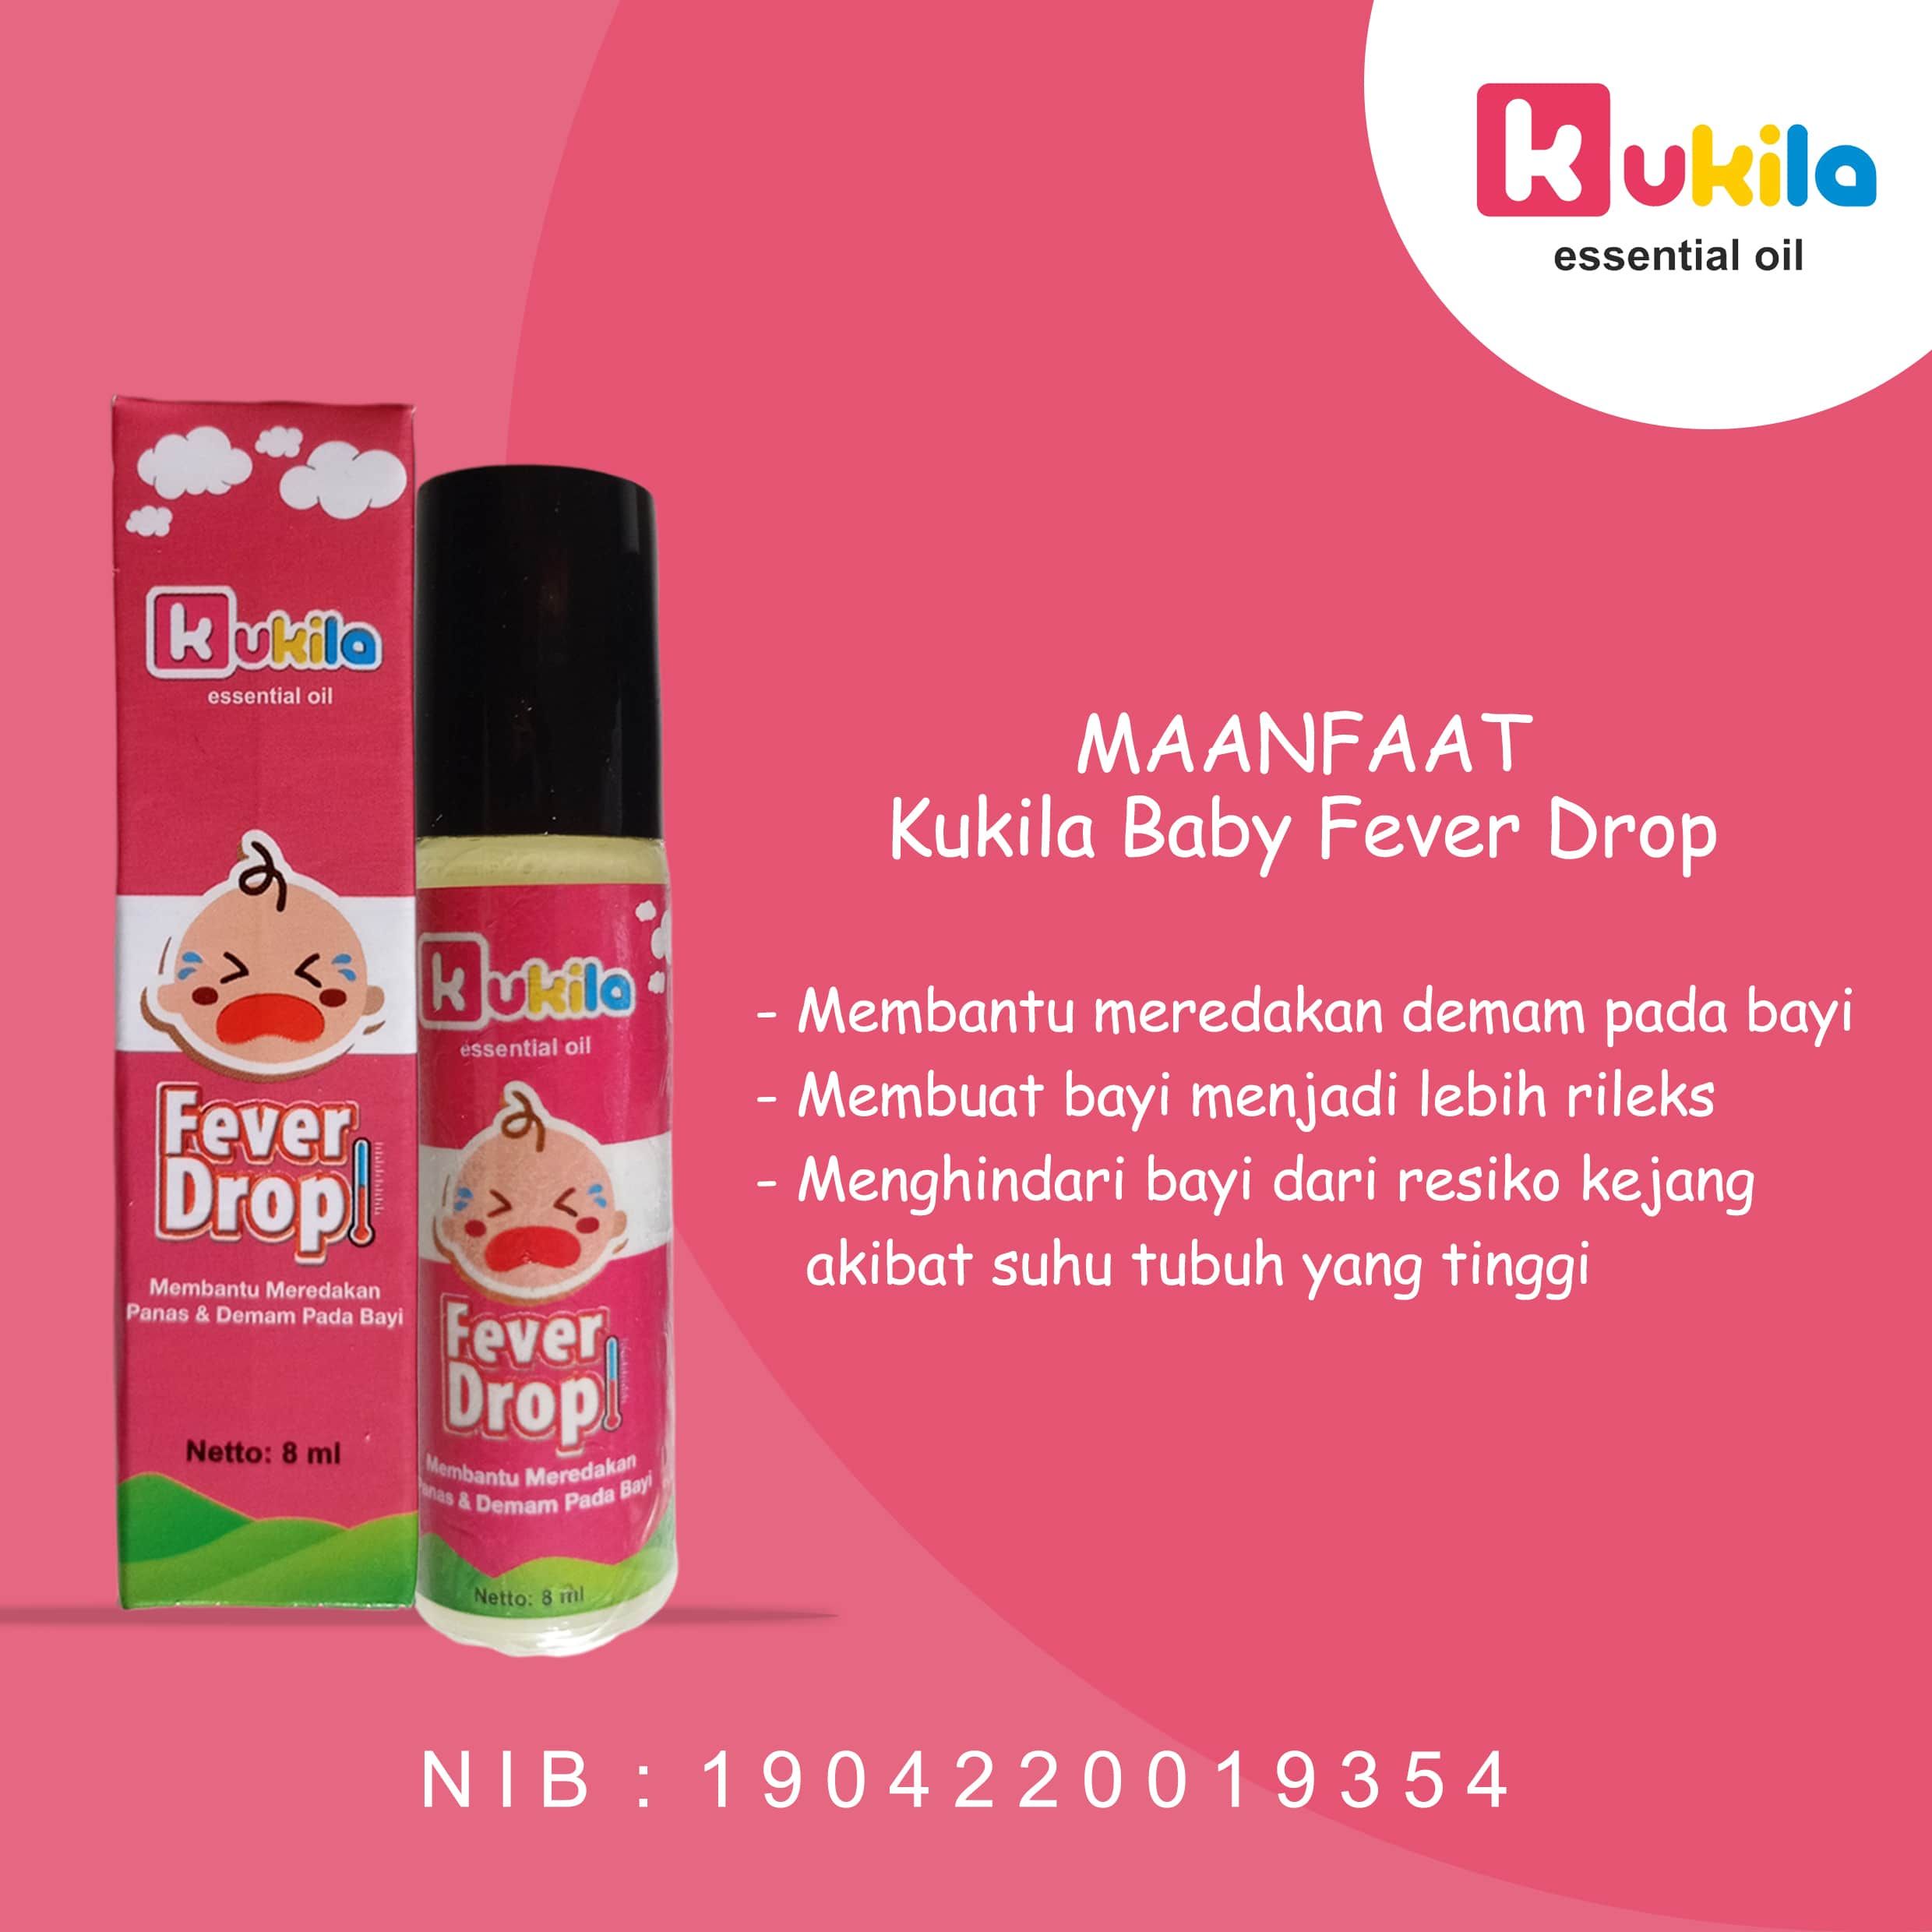 Kukila Essential Oil Baby Fever Drop 1 pcs dan Cough & Flu 5 pcs - 3